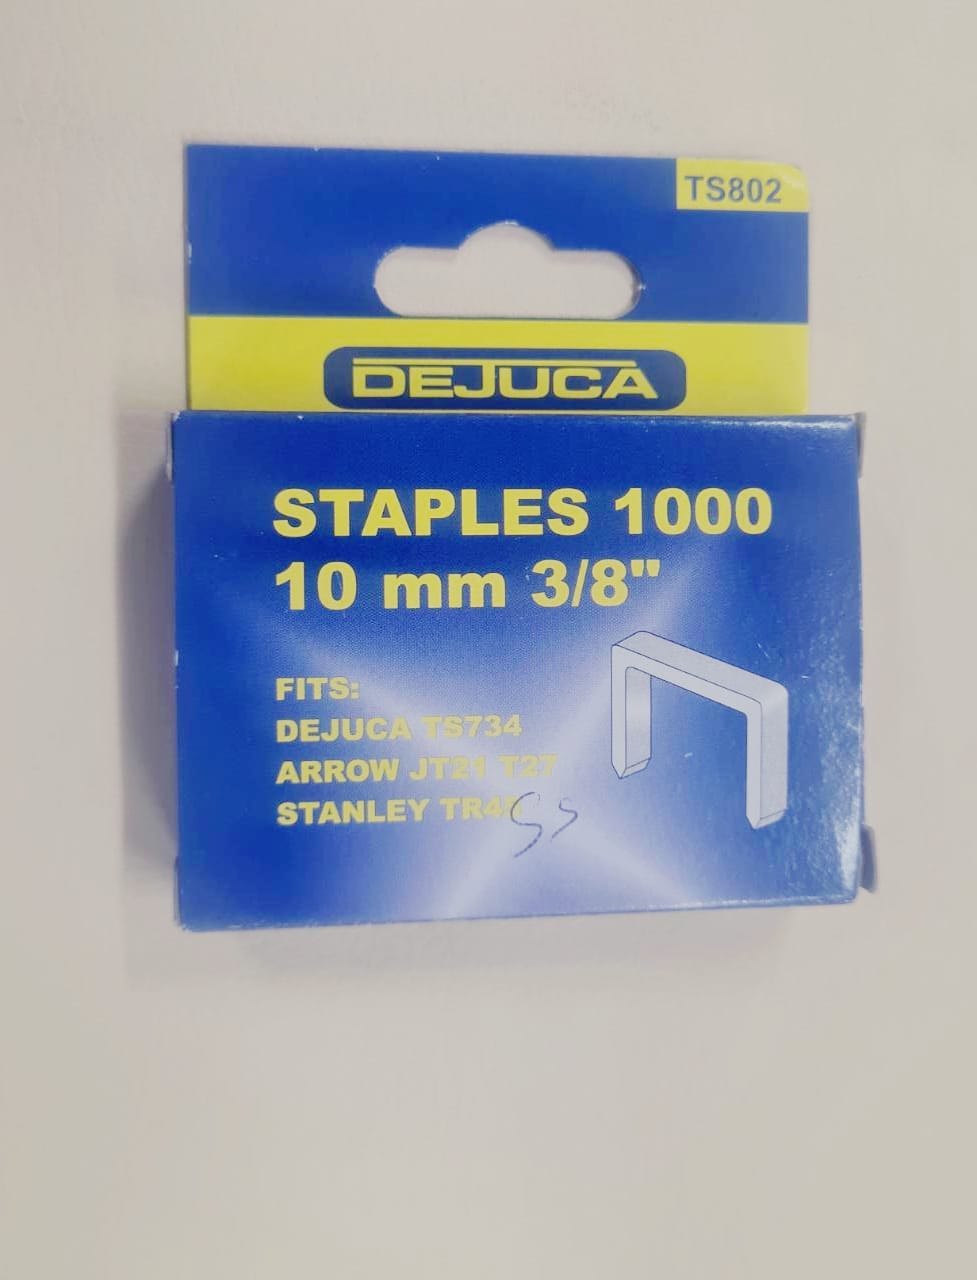 Staples 1000  10mm 3/8" DeJuca TS802